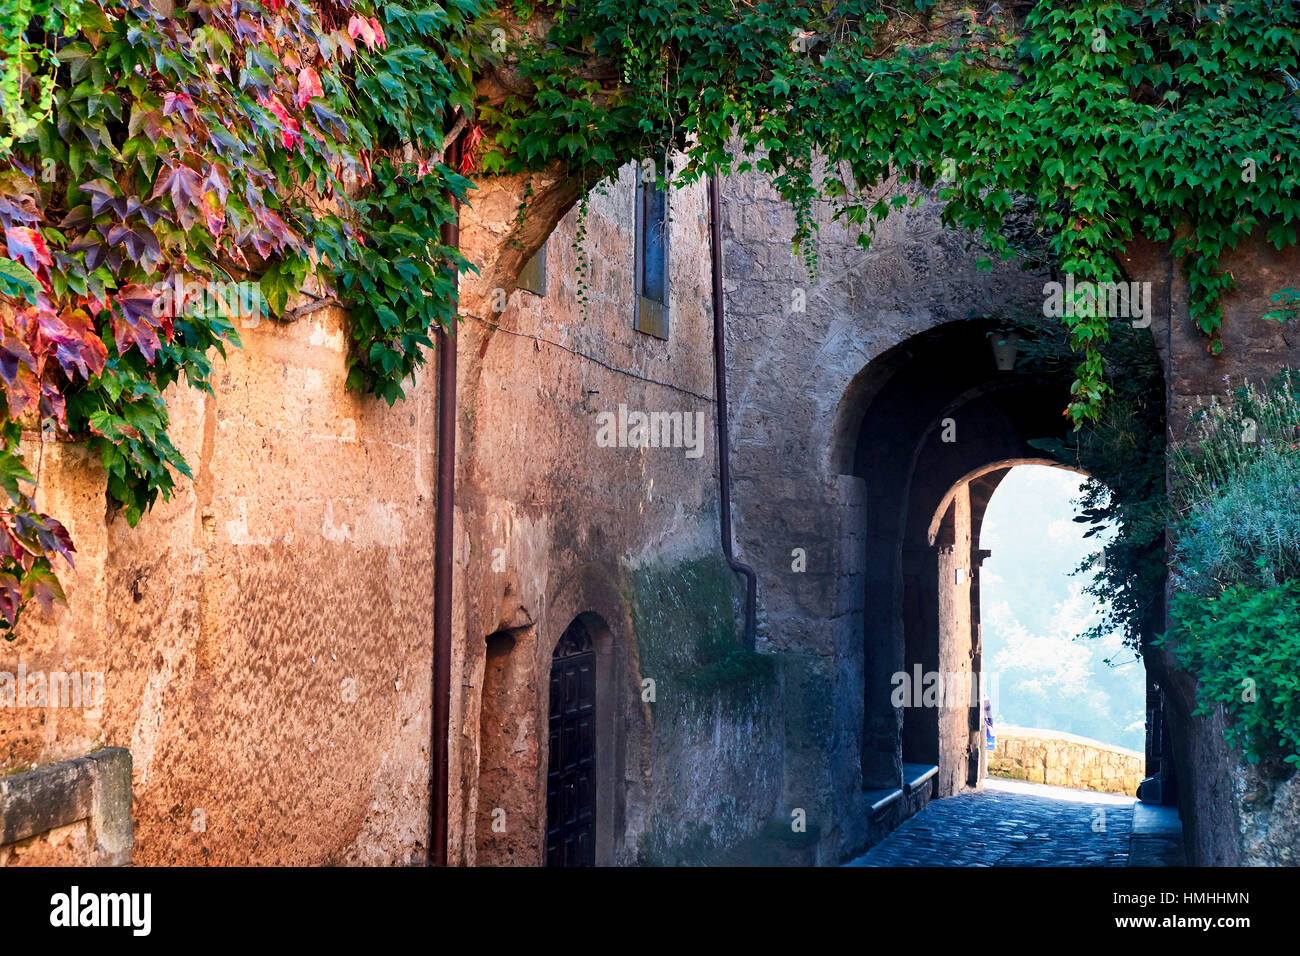 Porte d'entrée de ville d'une colline, Civita di Bagnoregio, Unbria, Italie Banque D'Images